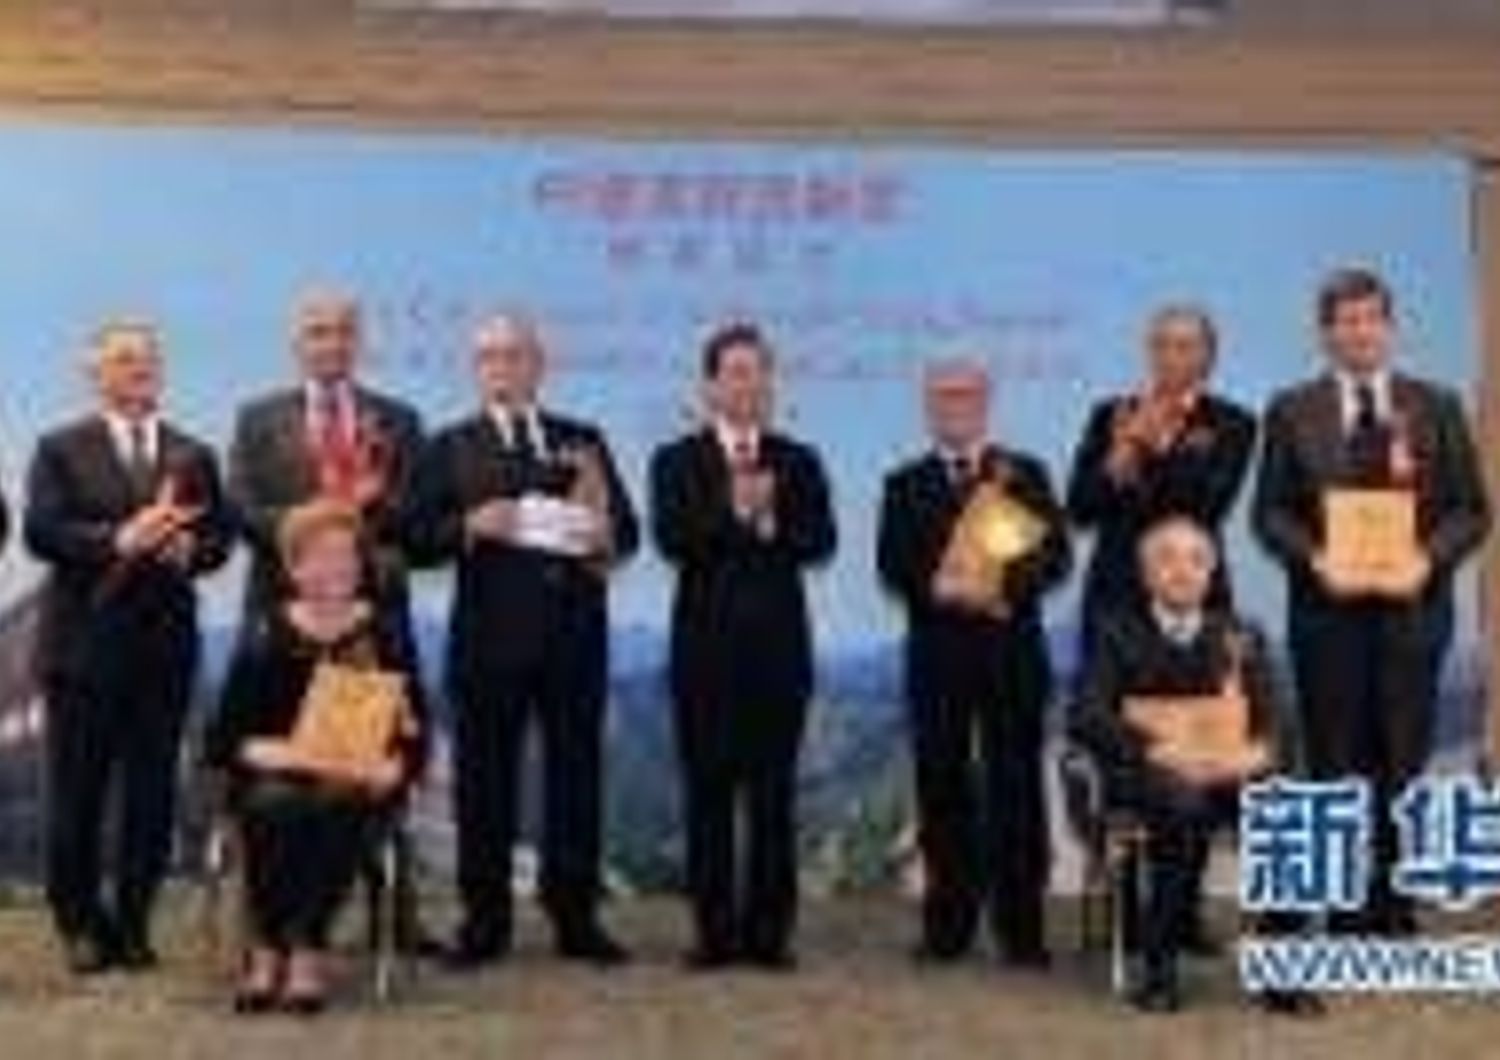 Preside della Facolta' di Studi Orientali, ha ricevuto il "Premio dell'Amicizia" dal Premier Wen Jiabao